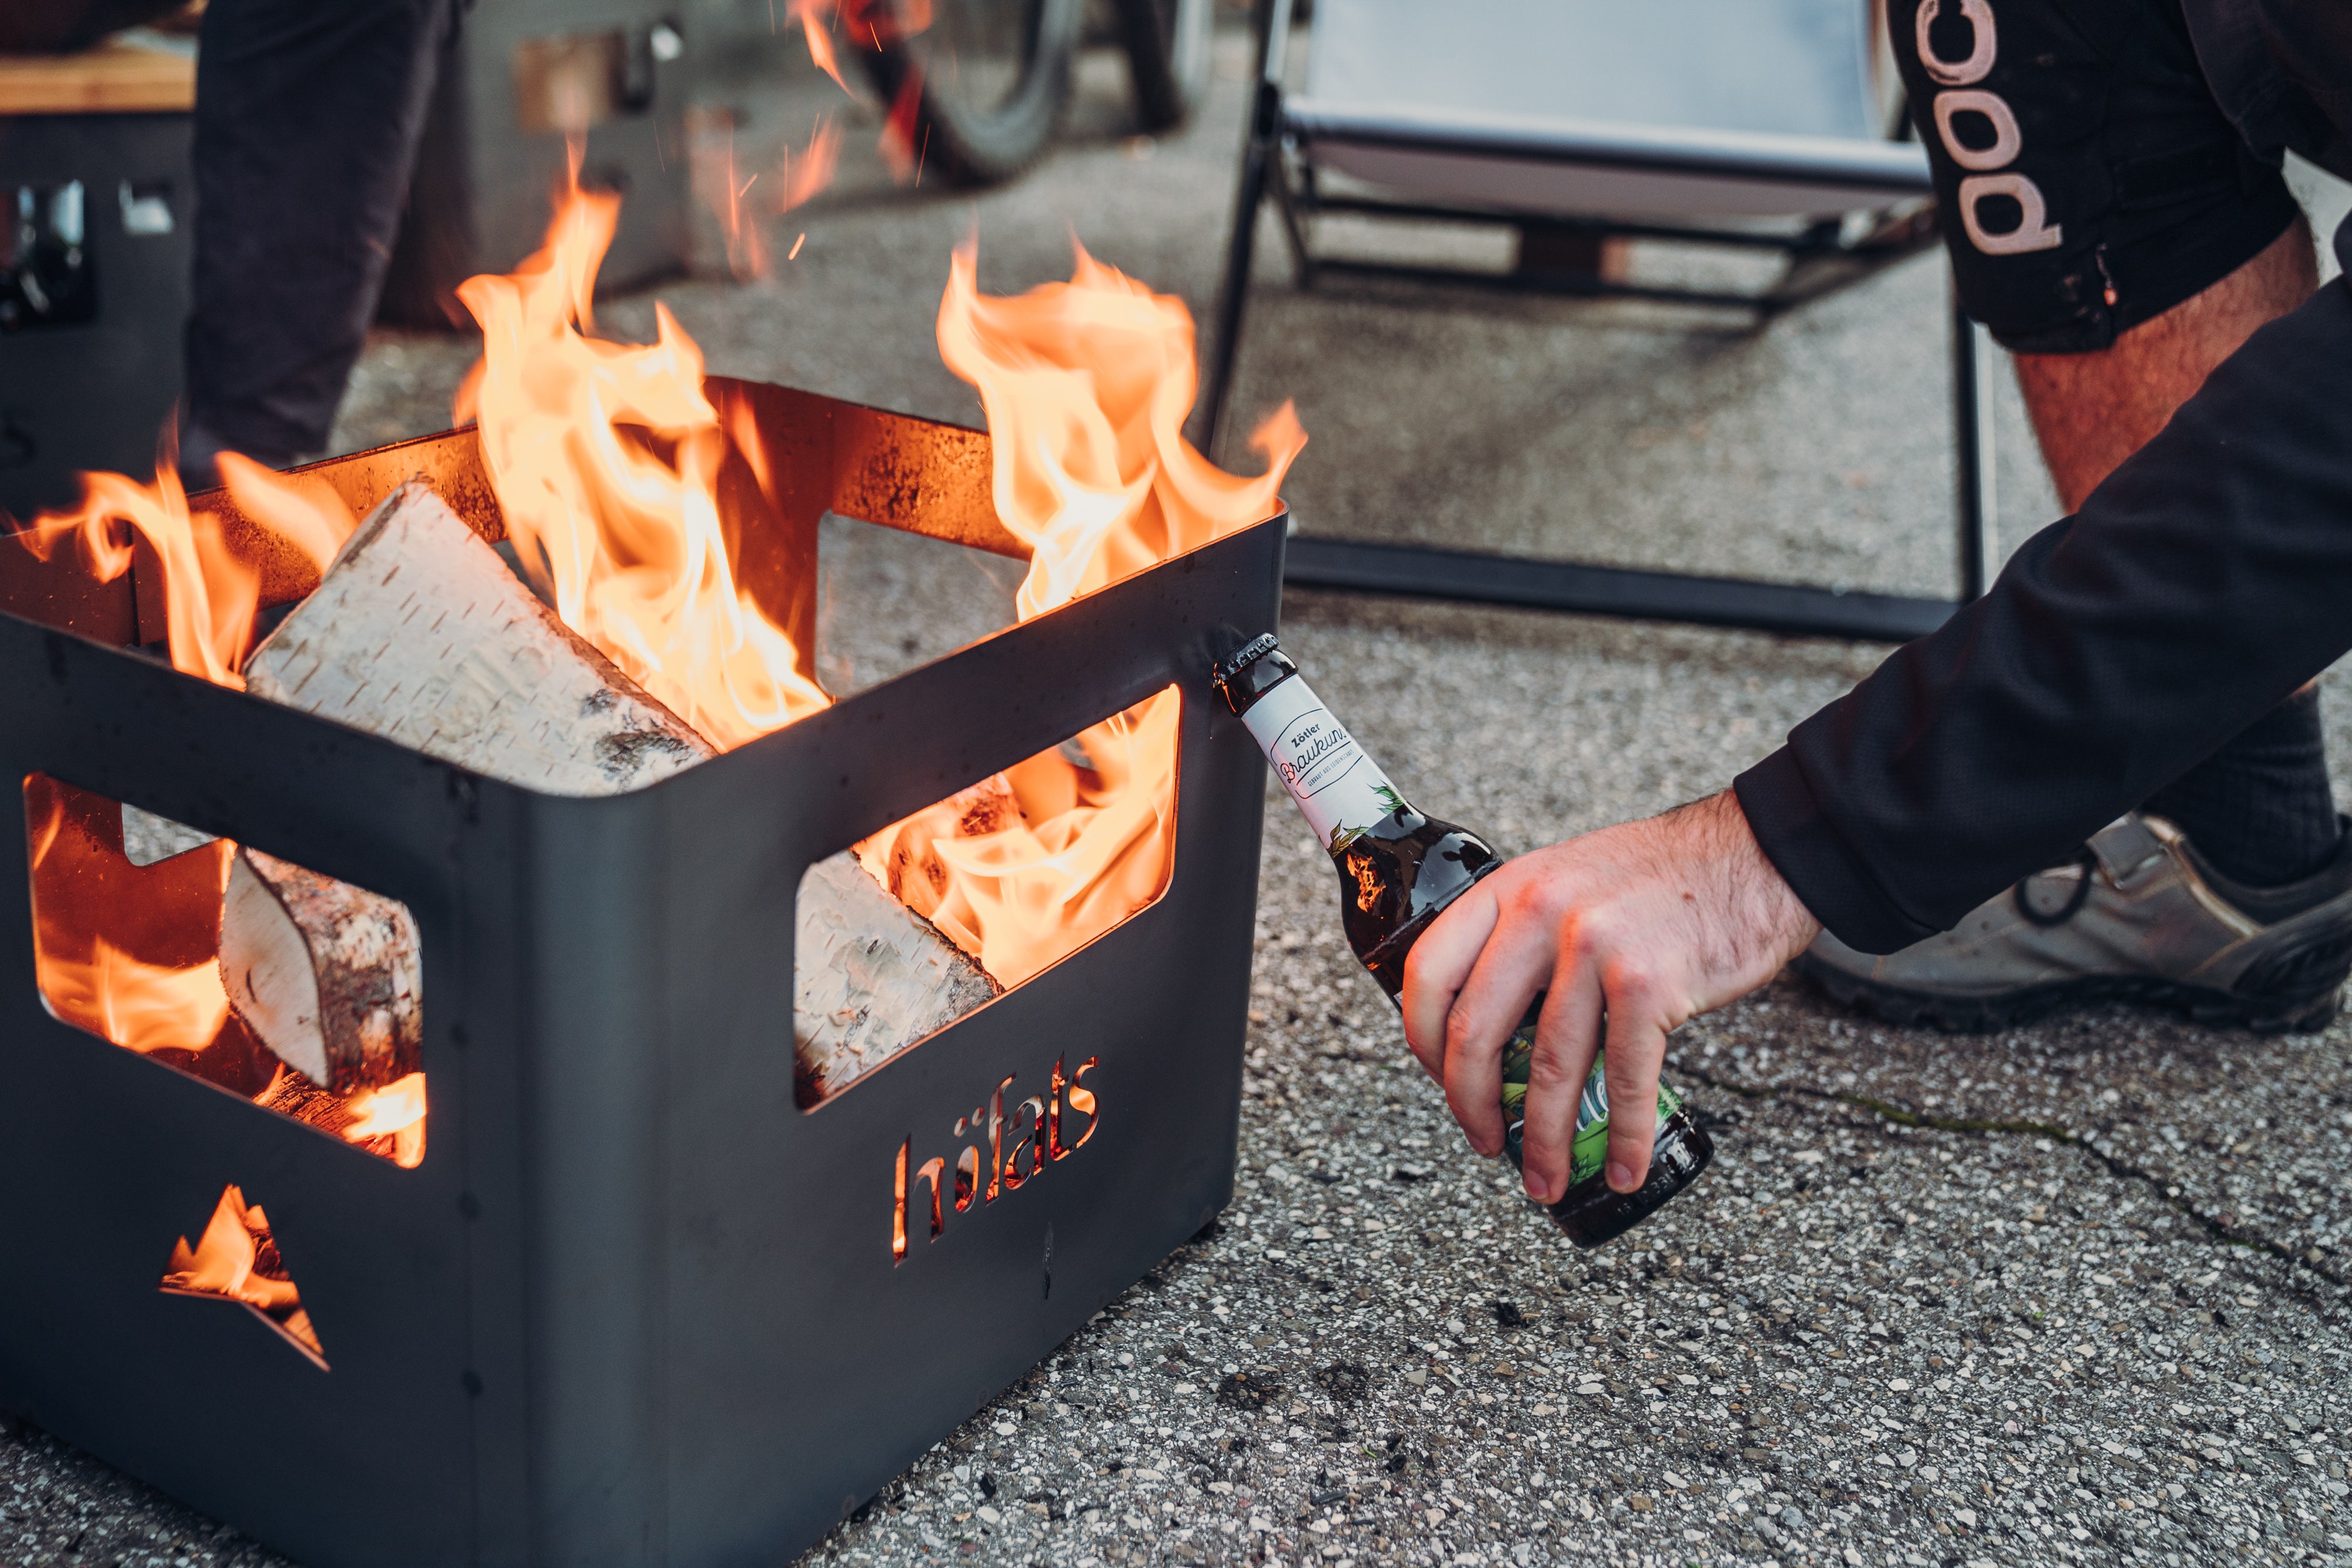 Hofats Fire Box – Roof Tents Ireland